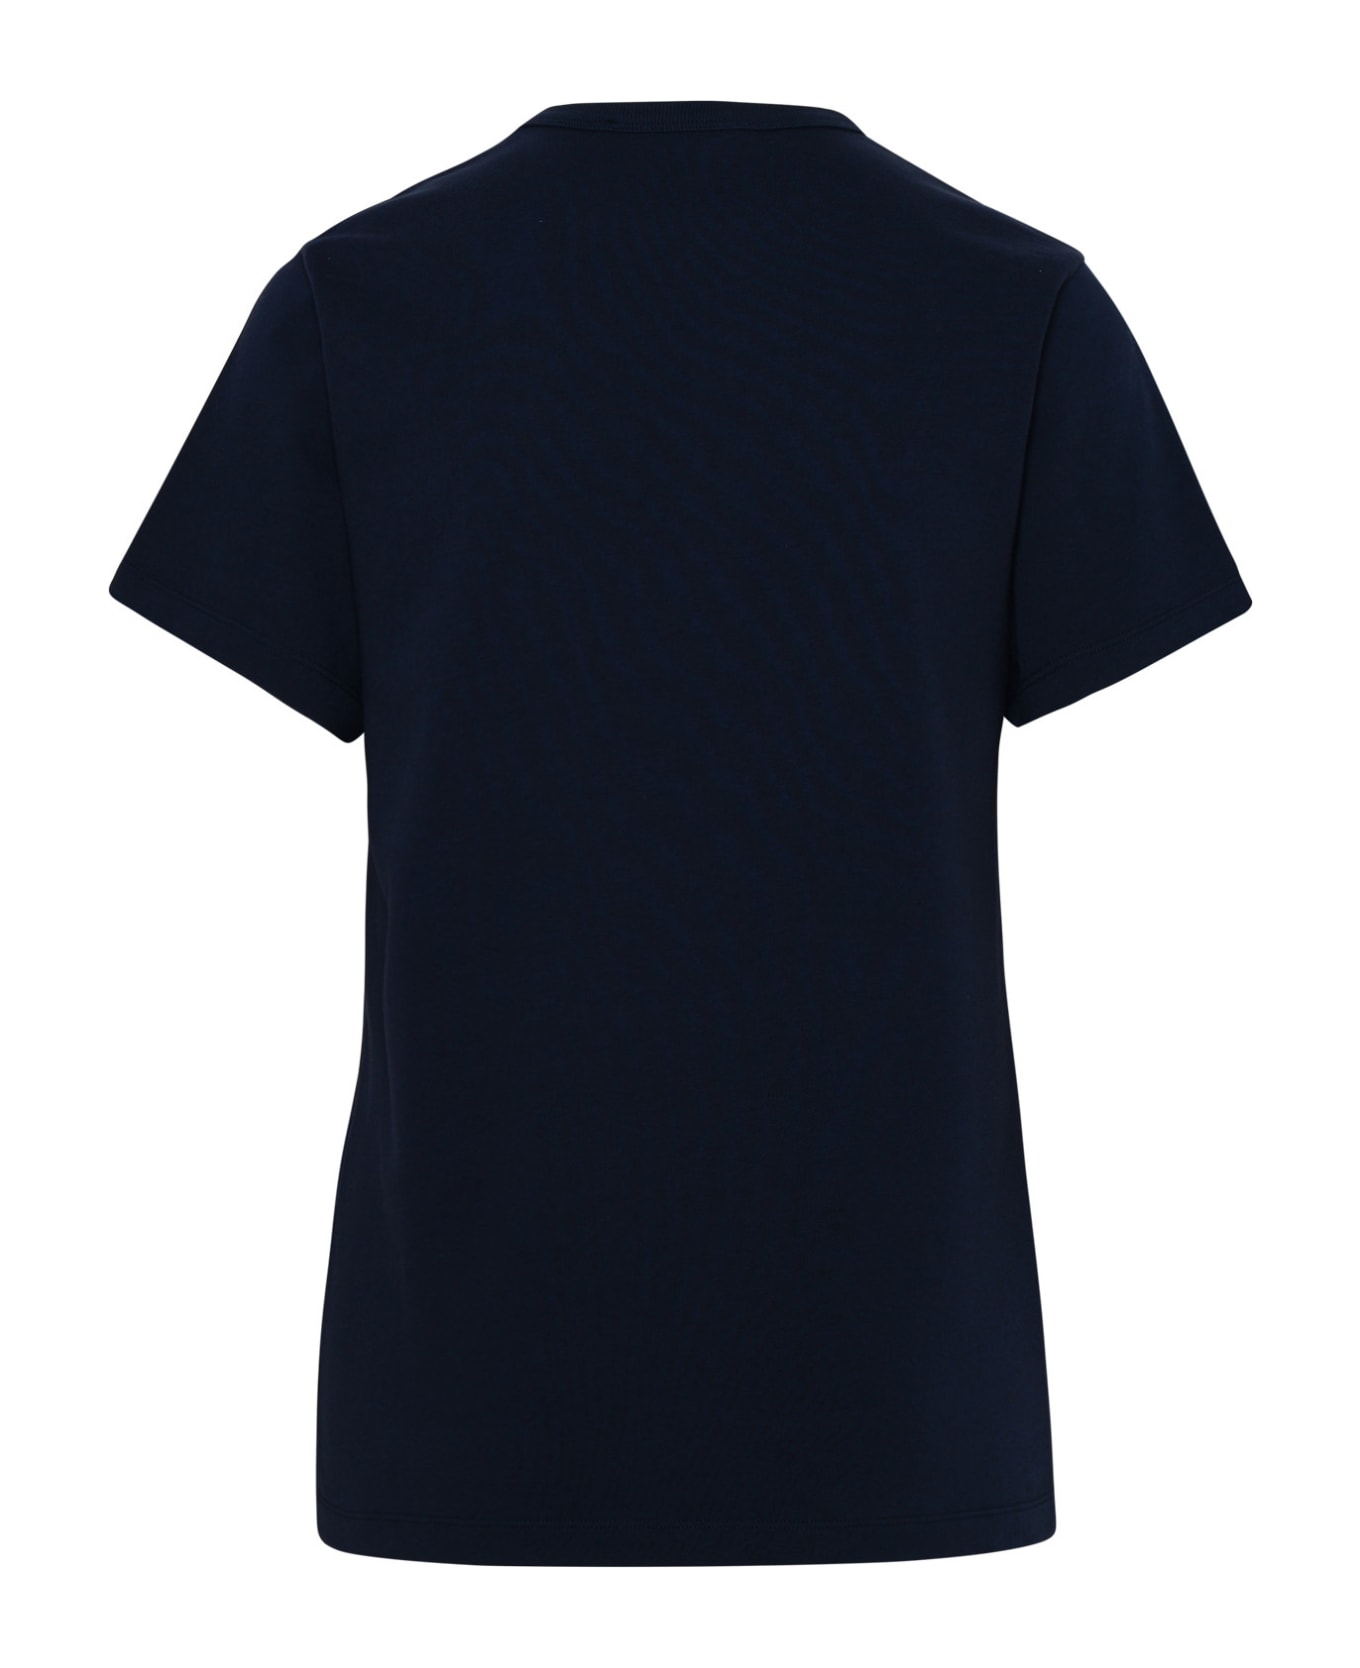 Maison Kitsuné Blue Cotton T-shirt - Navy Tシャツ